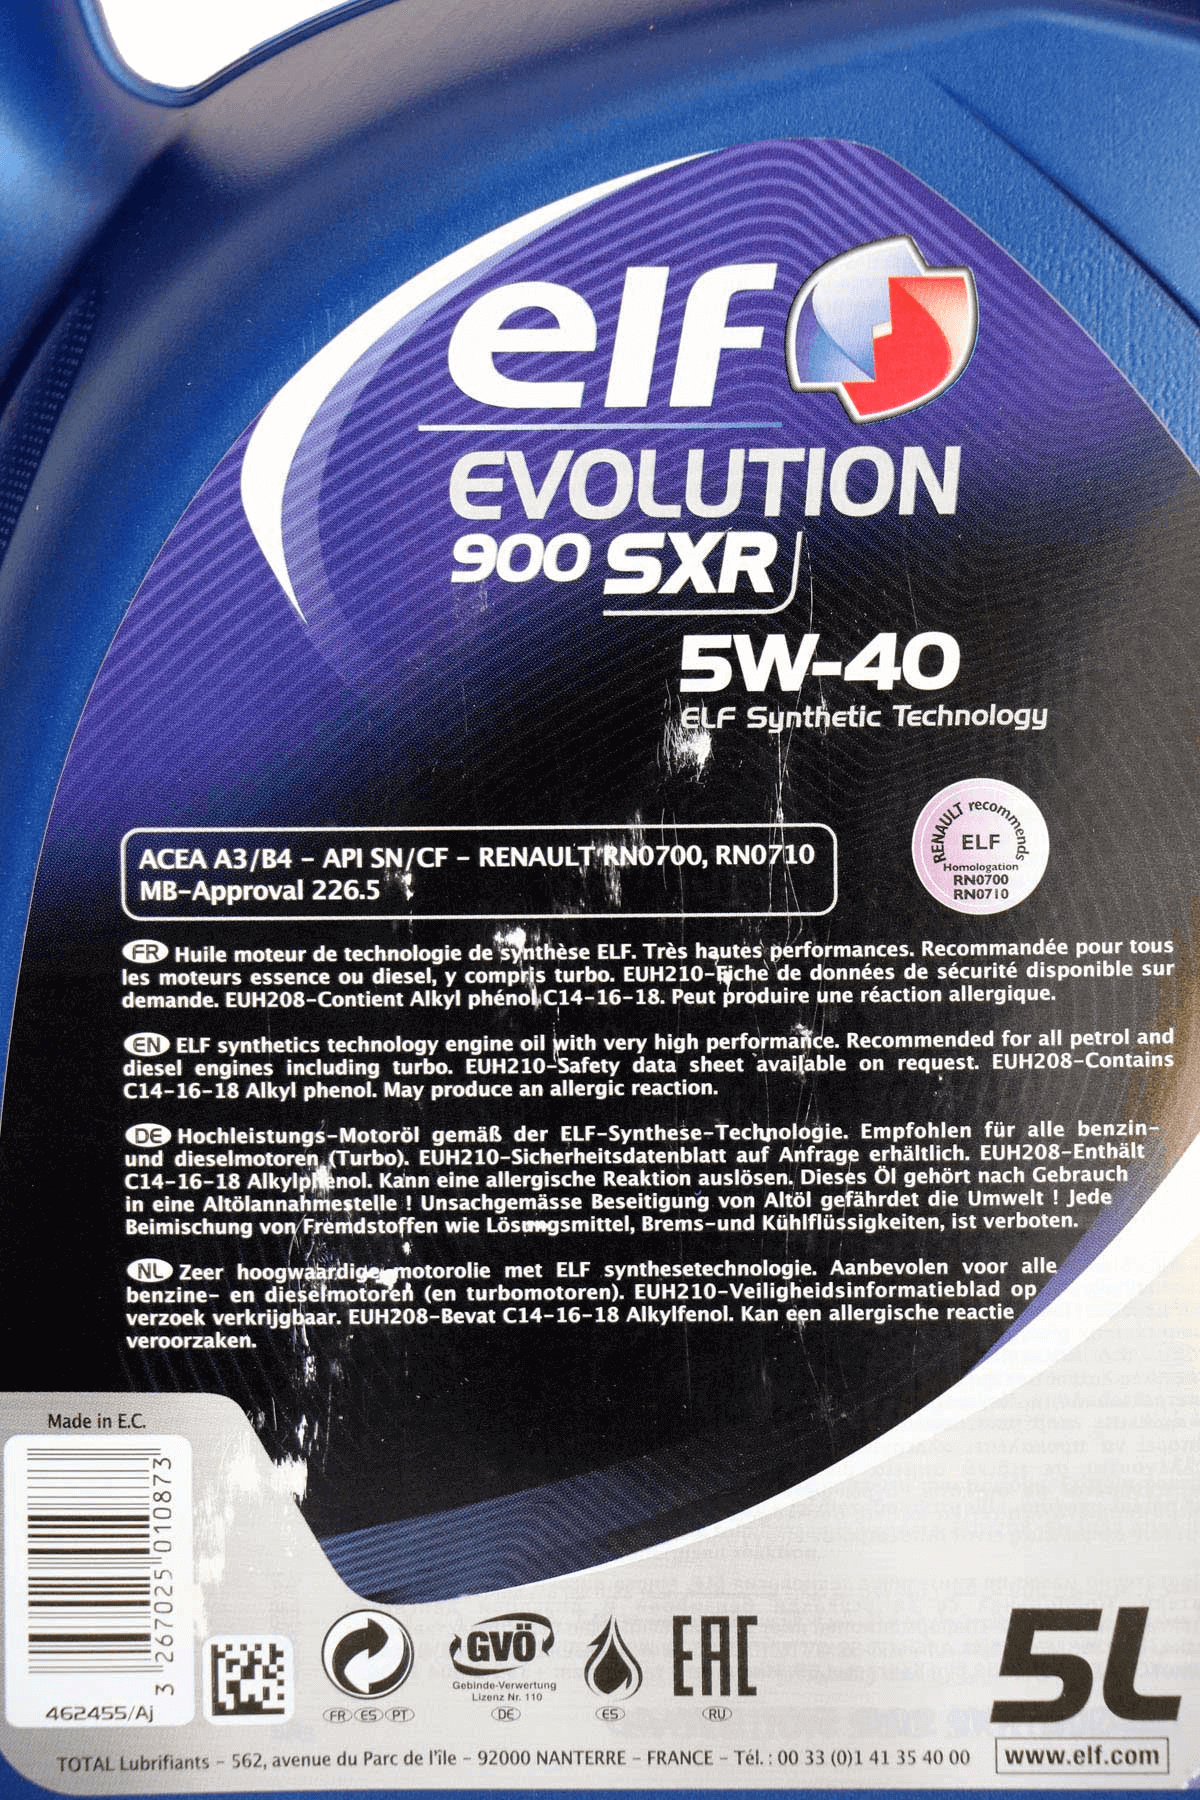 Elf evolution sxr 5w 40 - Der Favorit unserer Tester